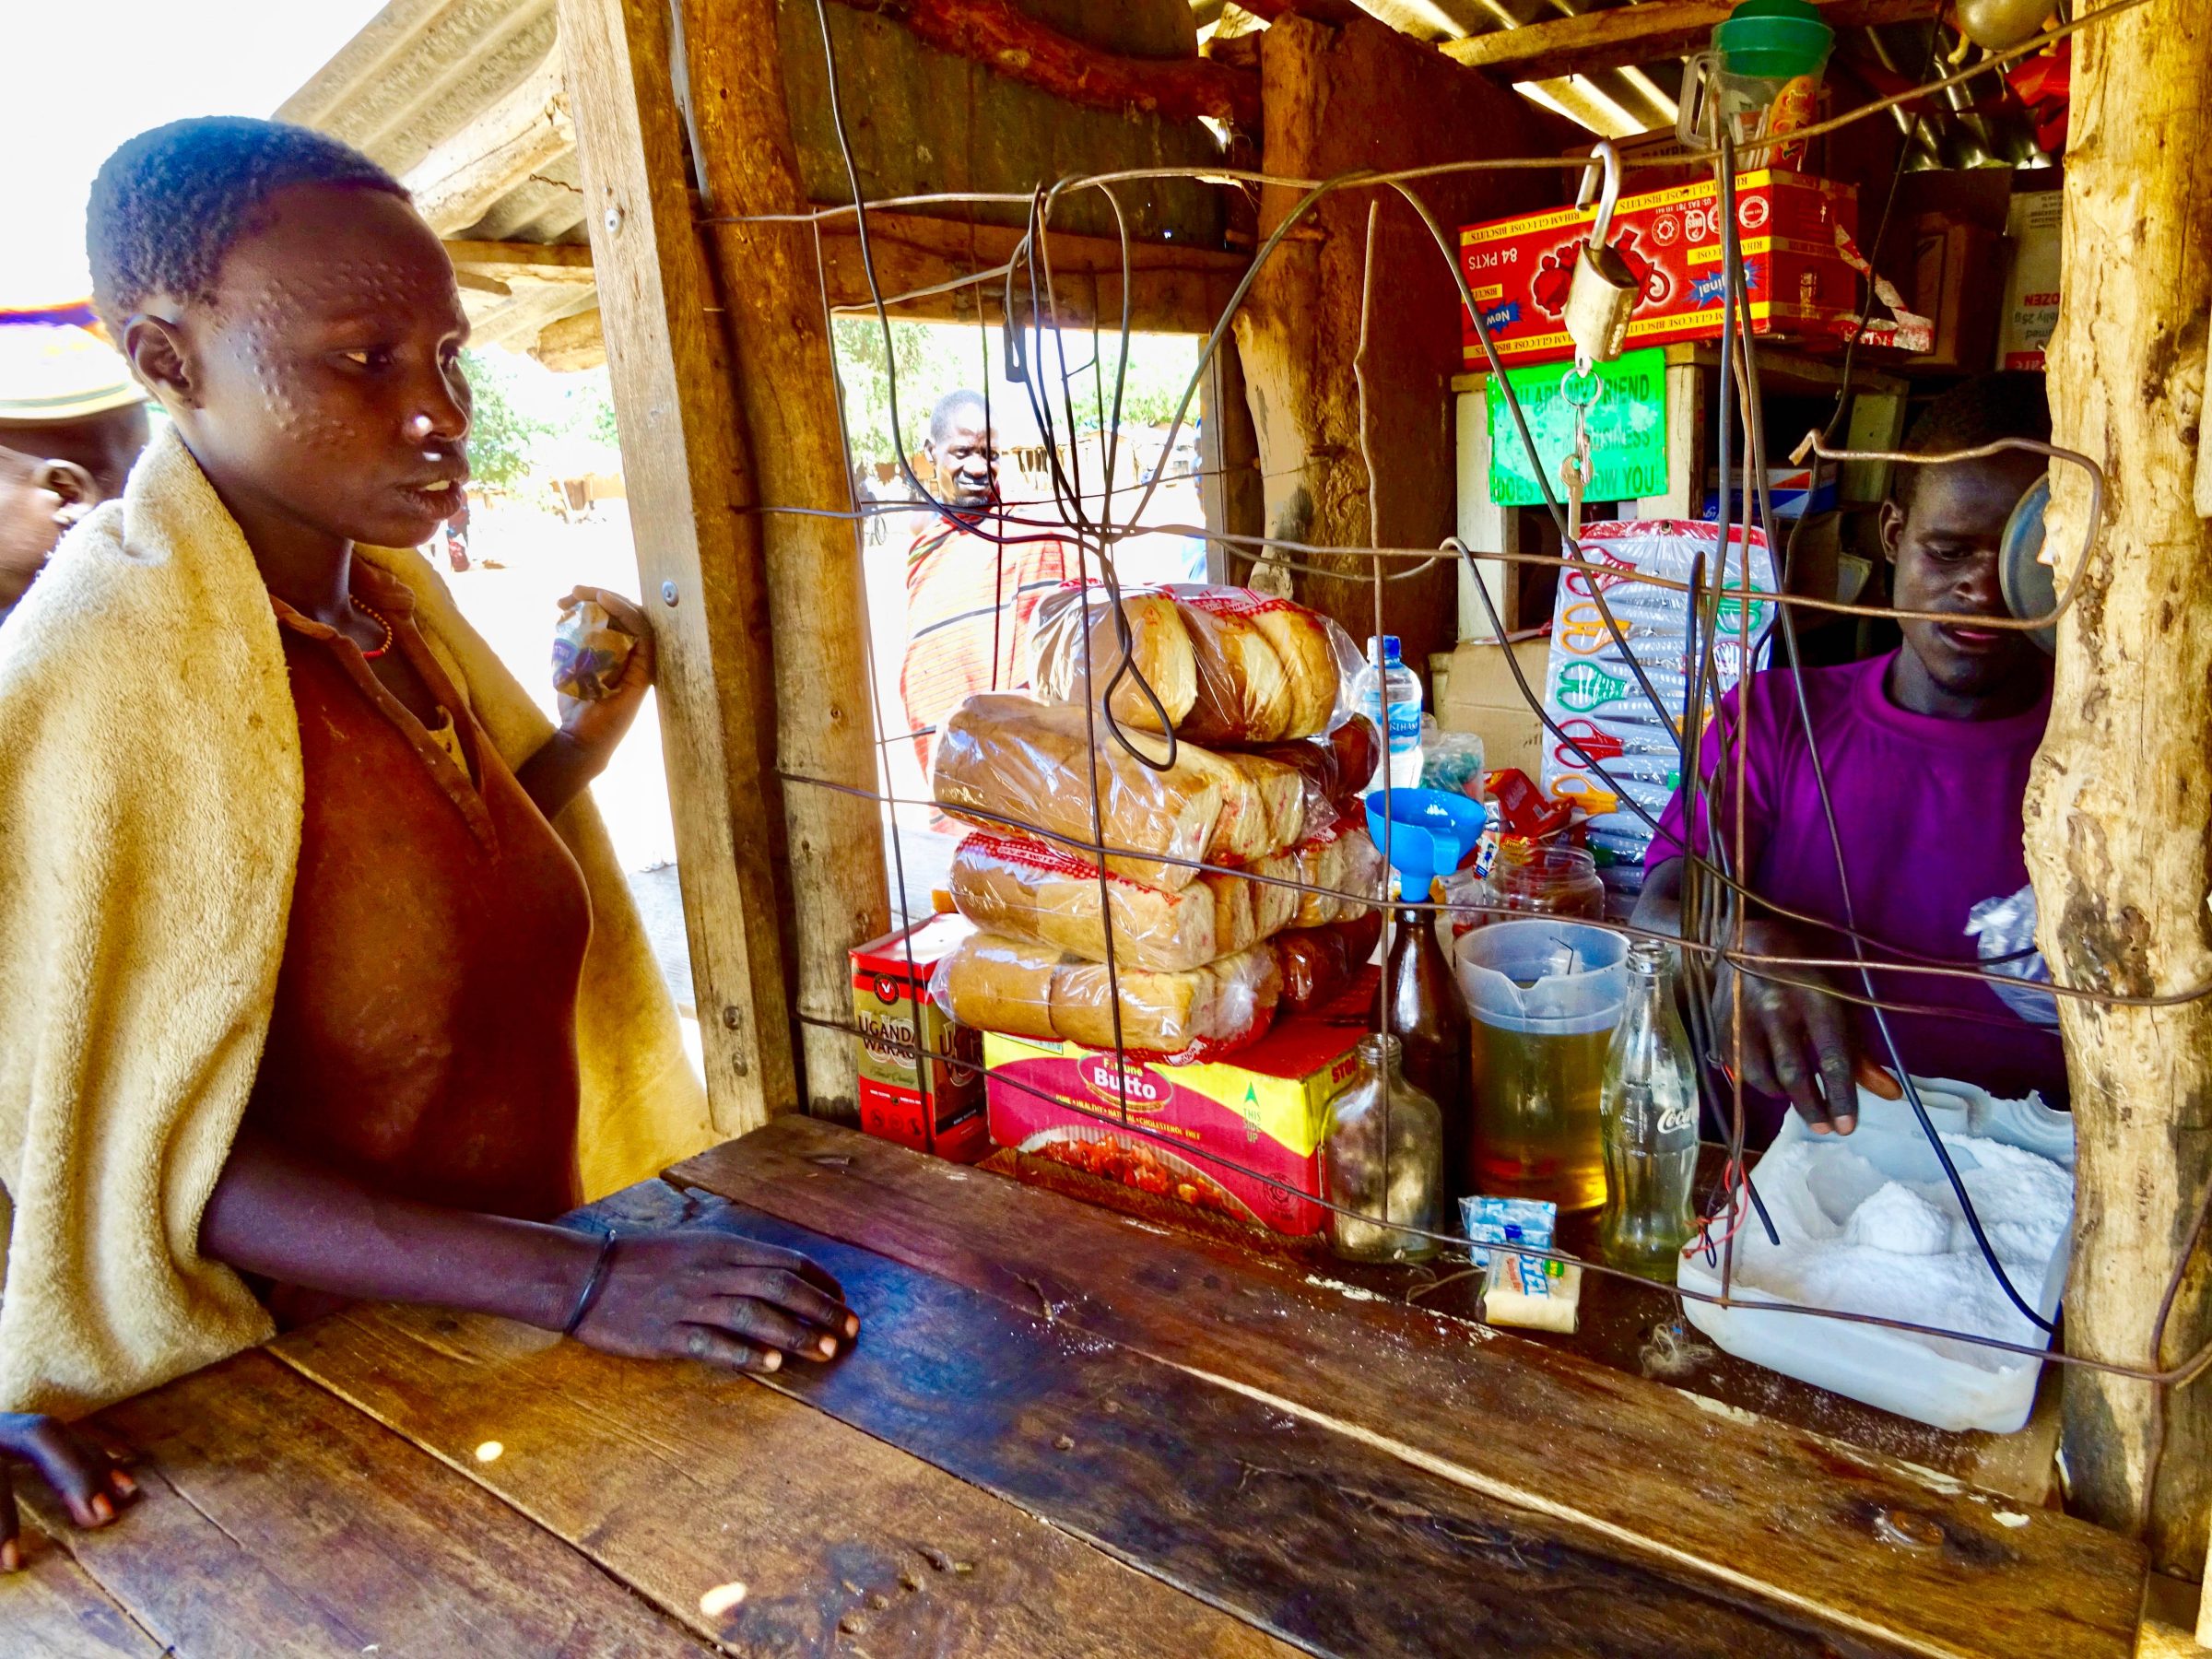 Karamajong vrouw koopt meel in winkel in Lopei | Karamoja | Wereldreizigers.nl